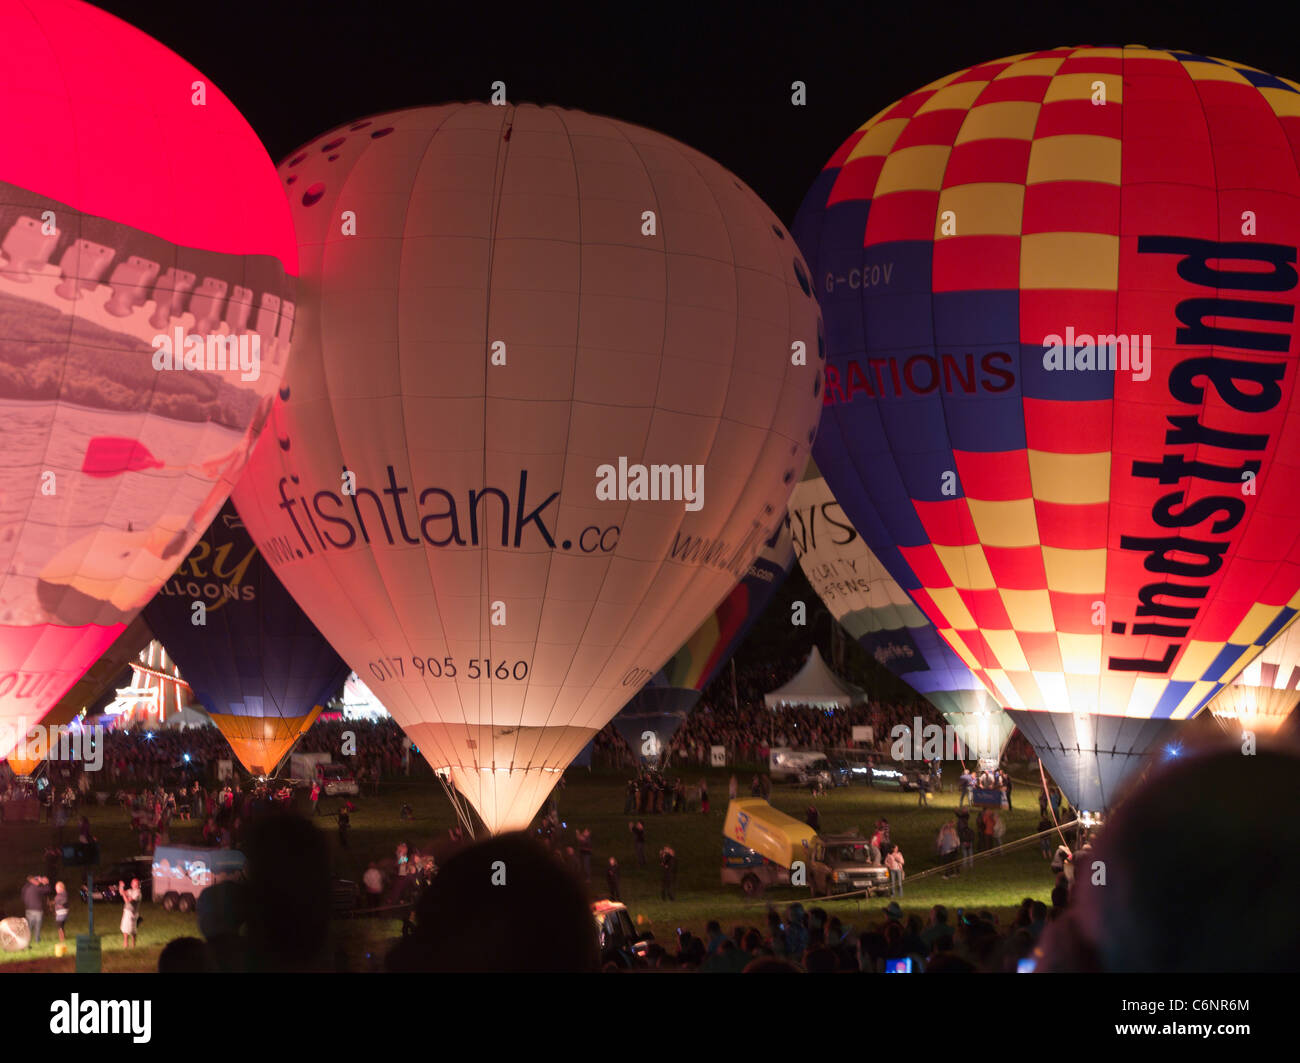 dh Bristol Balloon Festival ASHTON COURT FIESTA BRISTOL INGHILTERRA caldo i mongolfiera si illuminano durante i festival notturni del regno unito Foto Stock